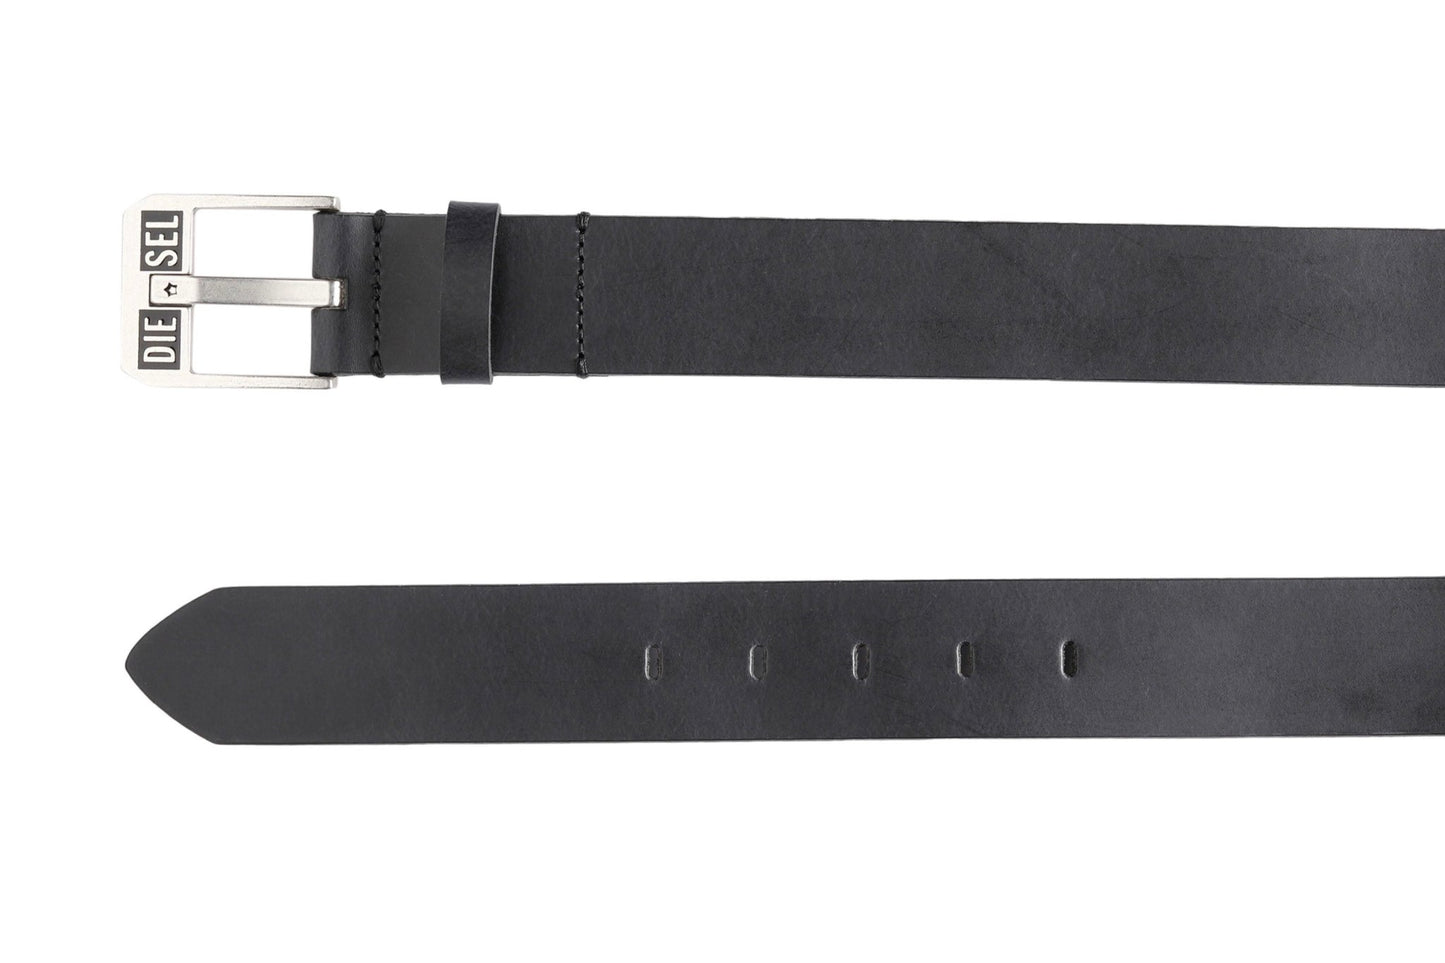 A black DIESEL BLUESTAR II leather belt with a silver buckle.